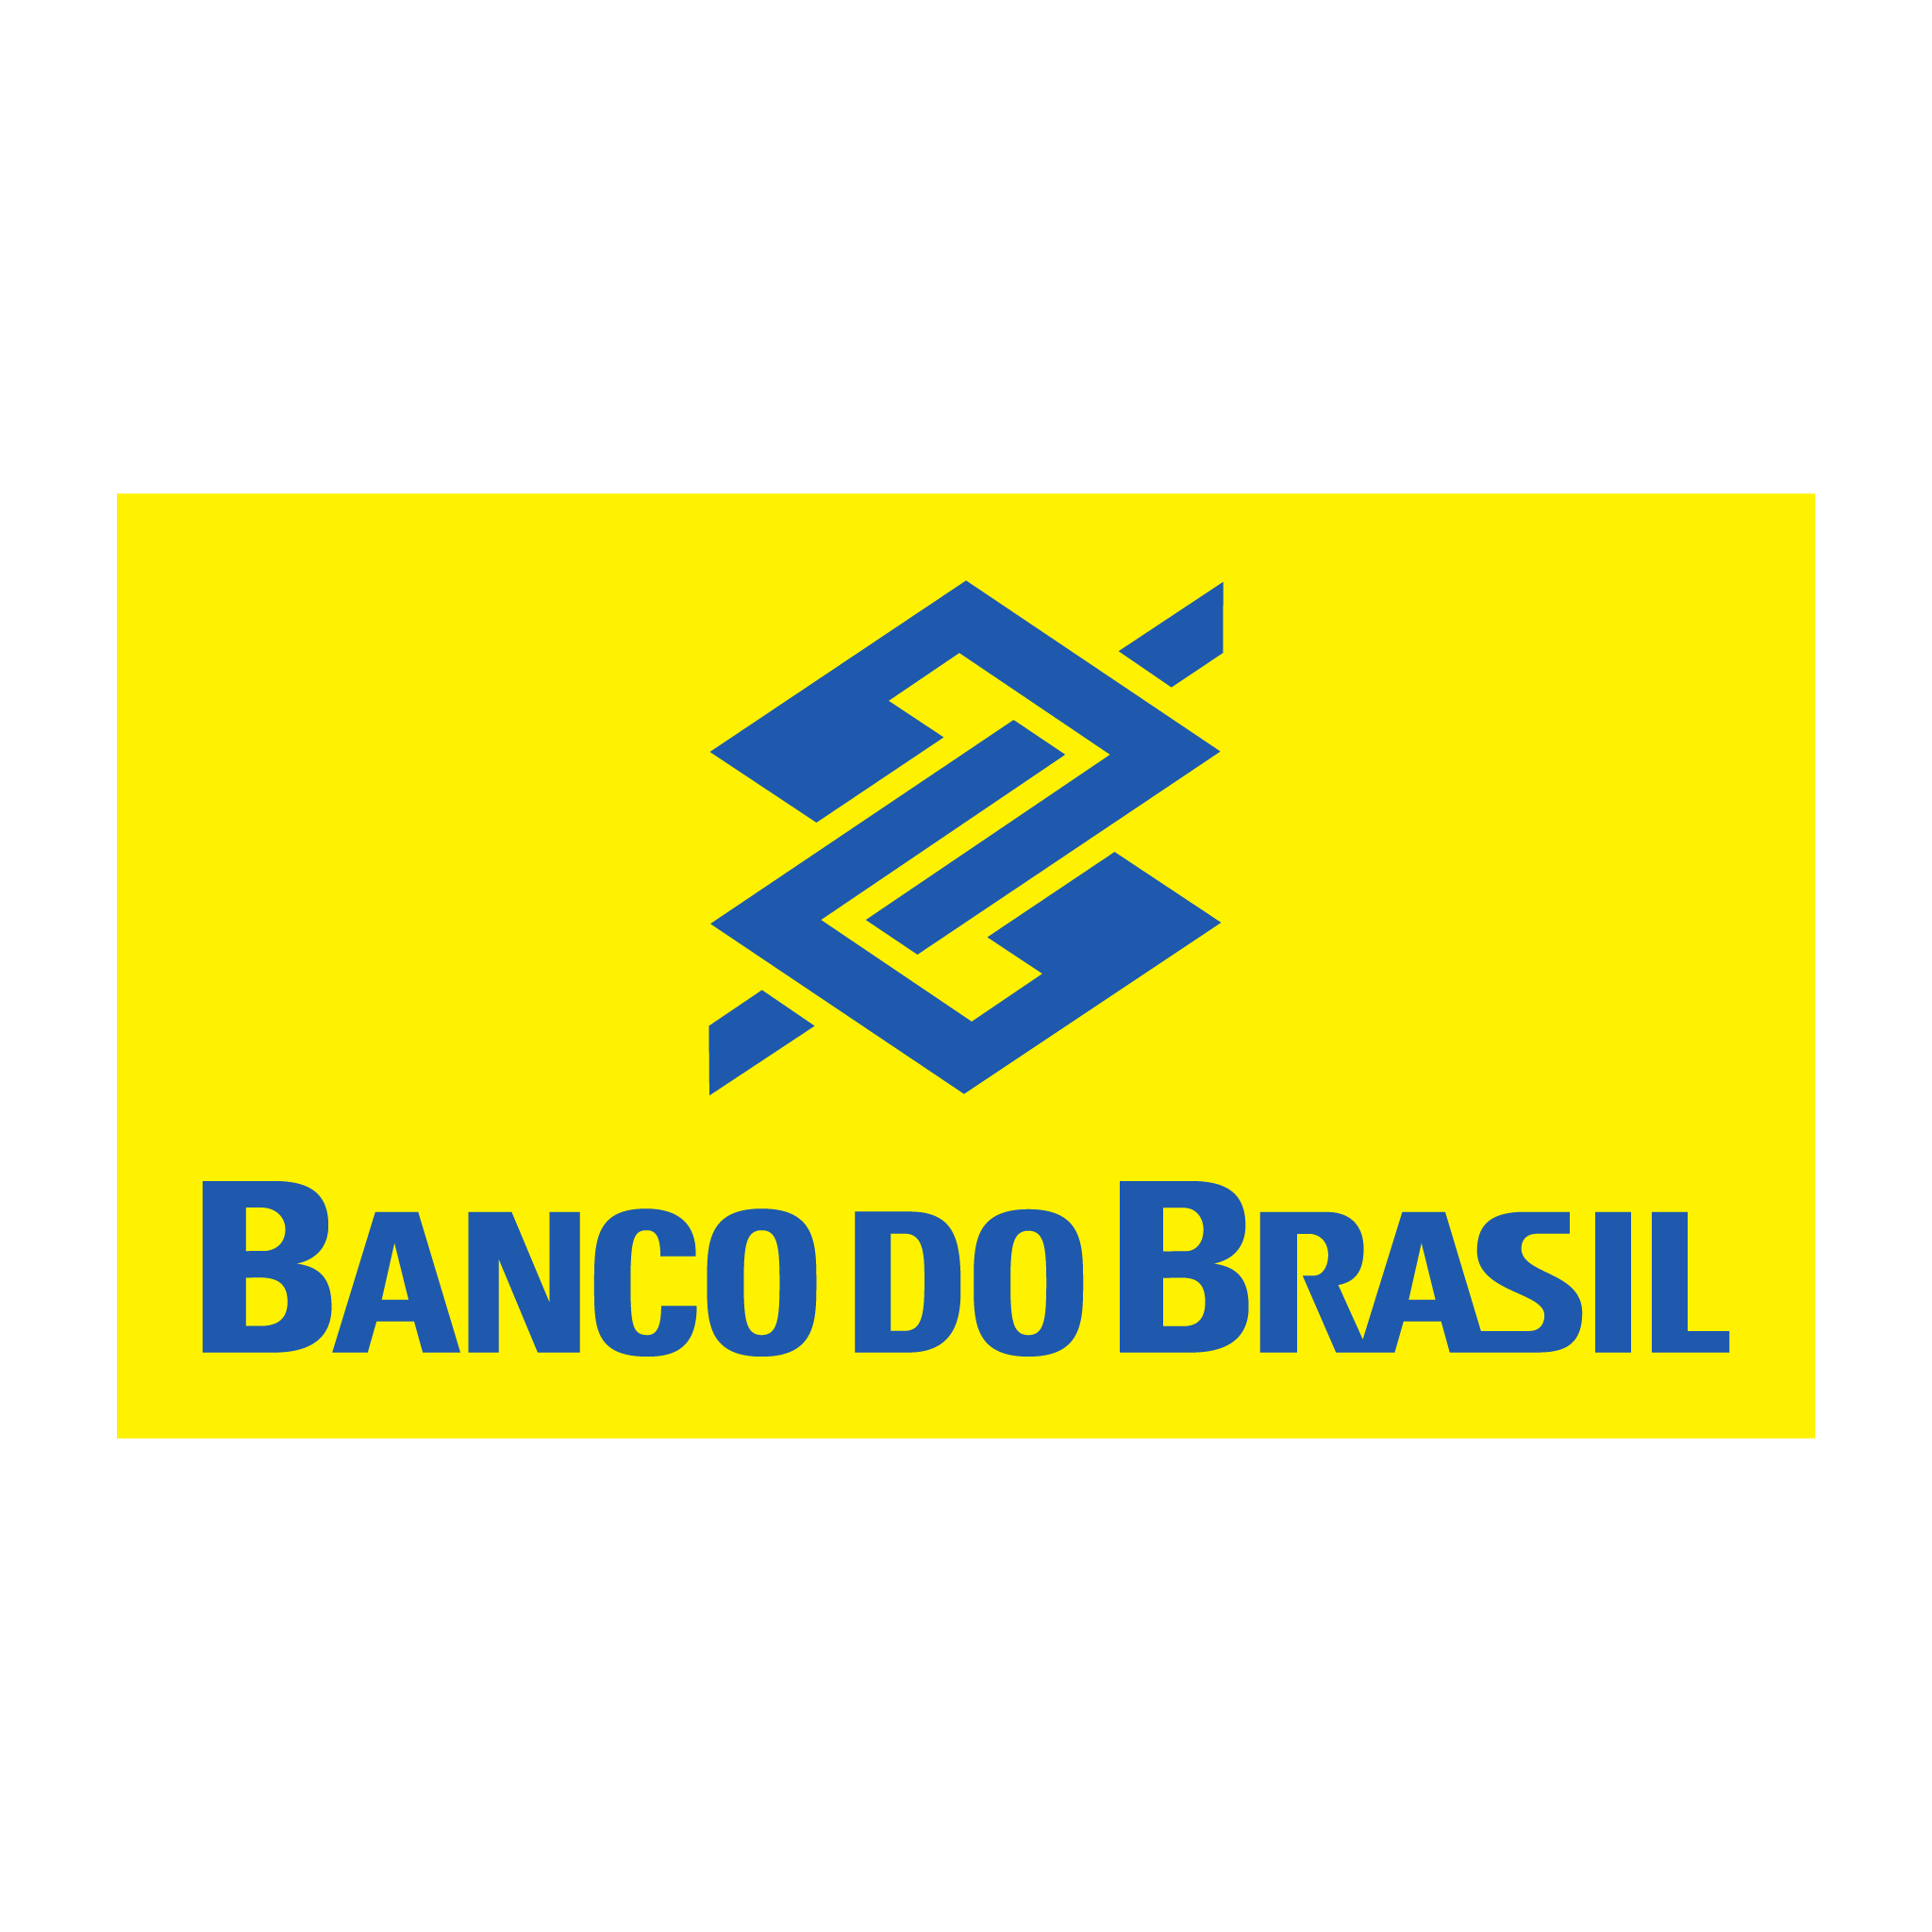 brasao do banco do brasil